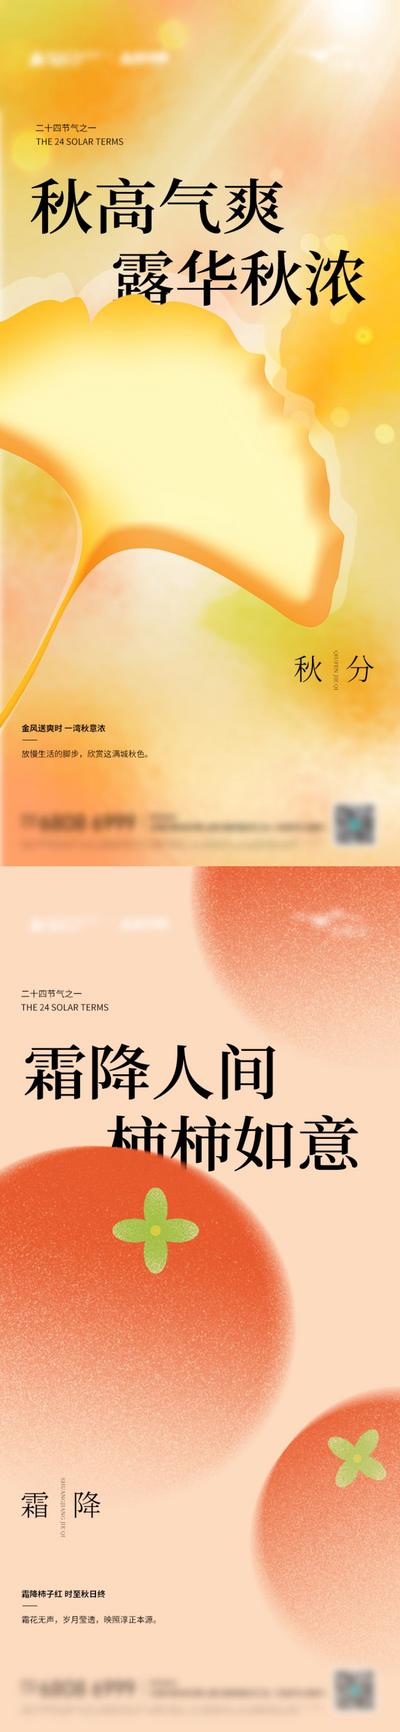 南门网 海报 二十四节气 秋分 霜降 银杏 柿子 弥散 系列